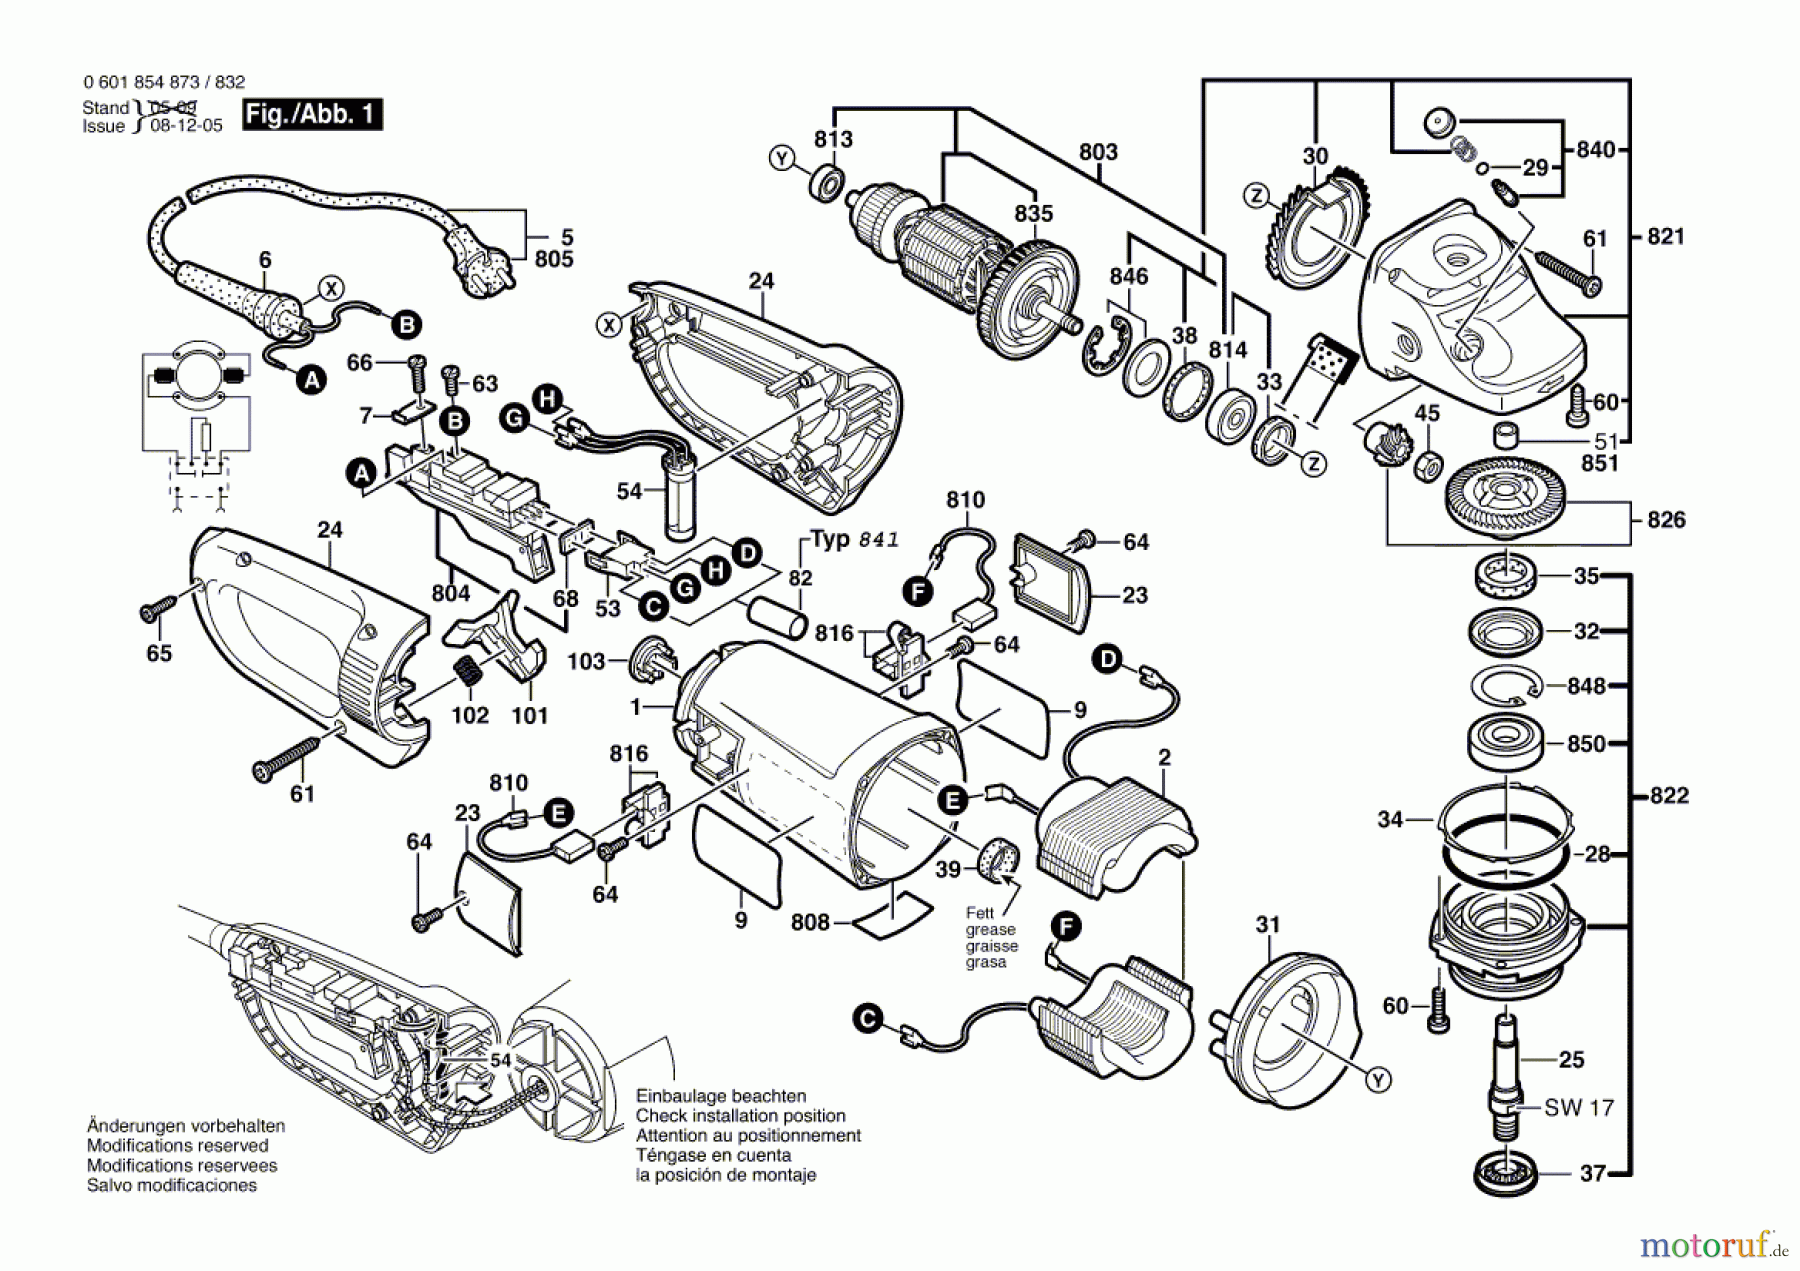  Bosch Werkzeug Winkelschleifer GWS 24-230 JB Seite 1